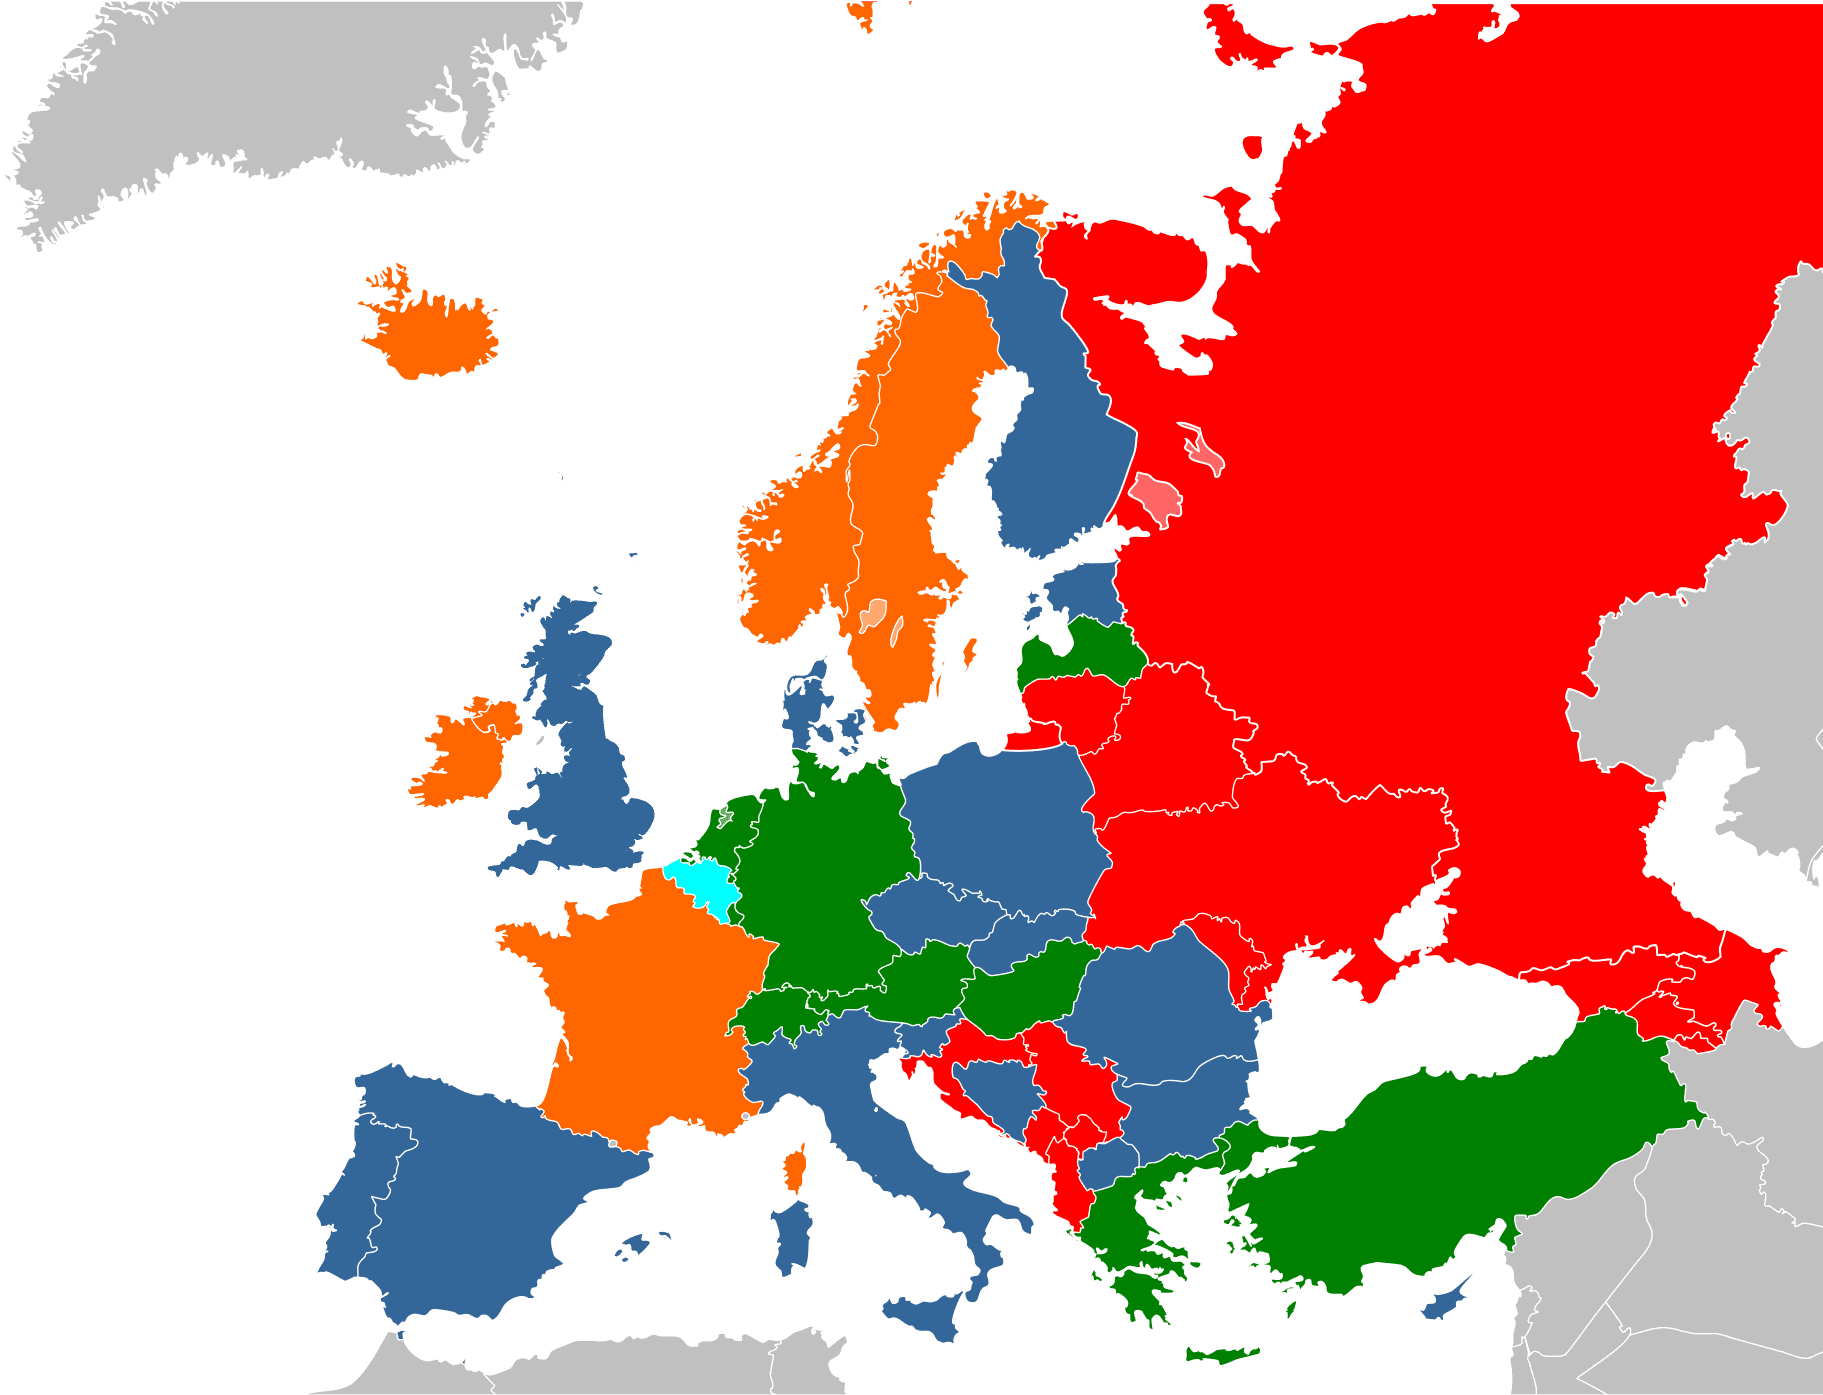 Mapa postojov štátov k sex ponukám a poskytovanie sexuálnych služieb v EÚ